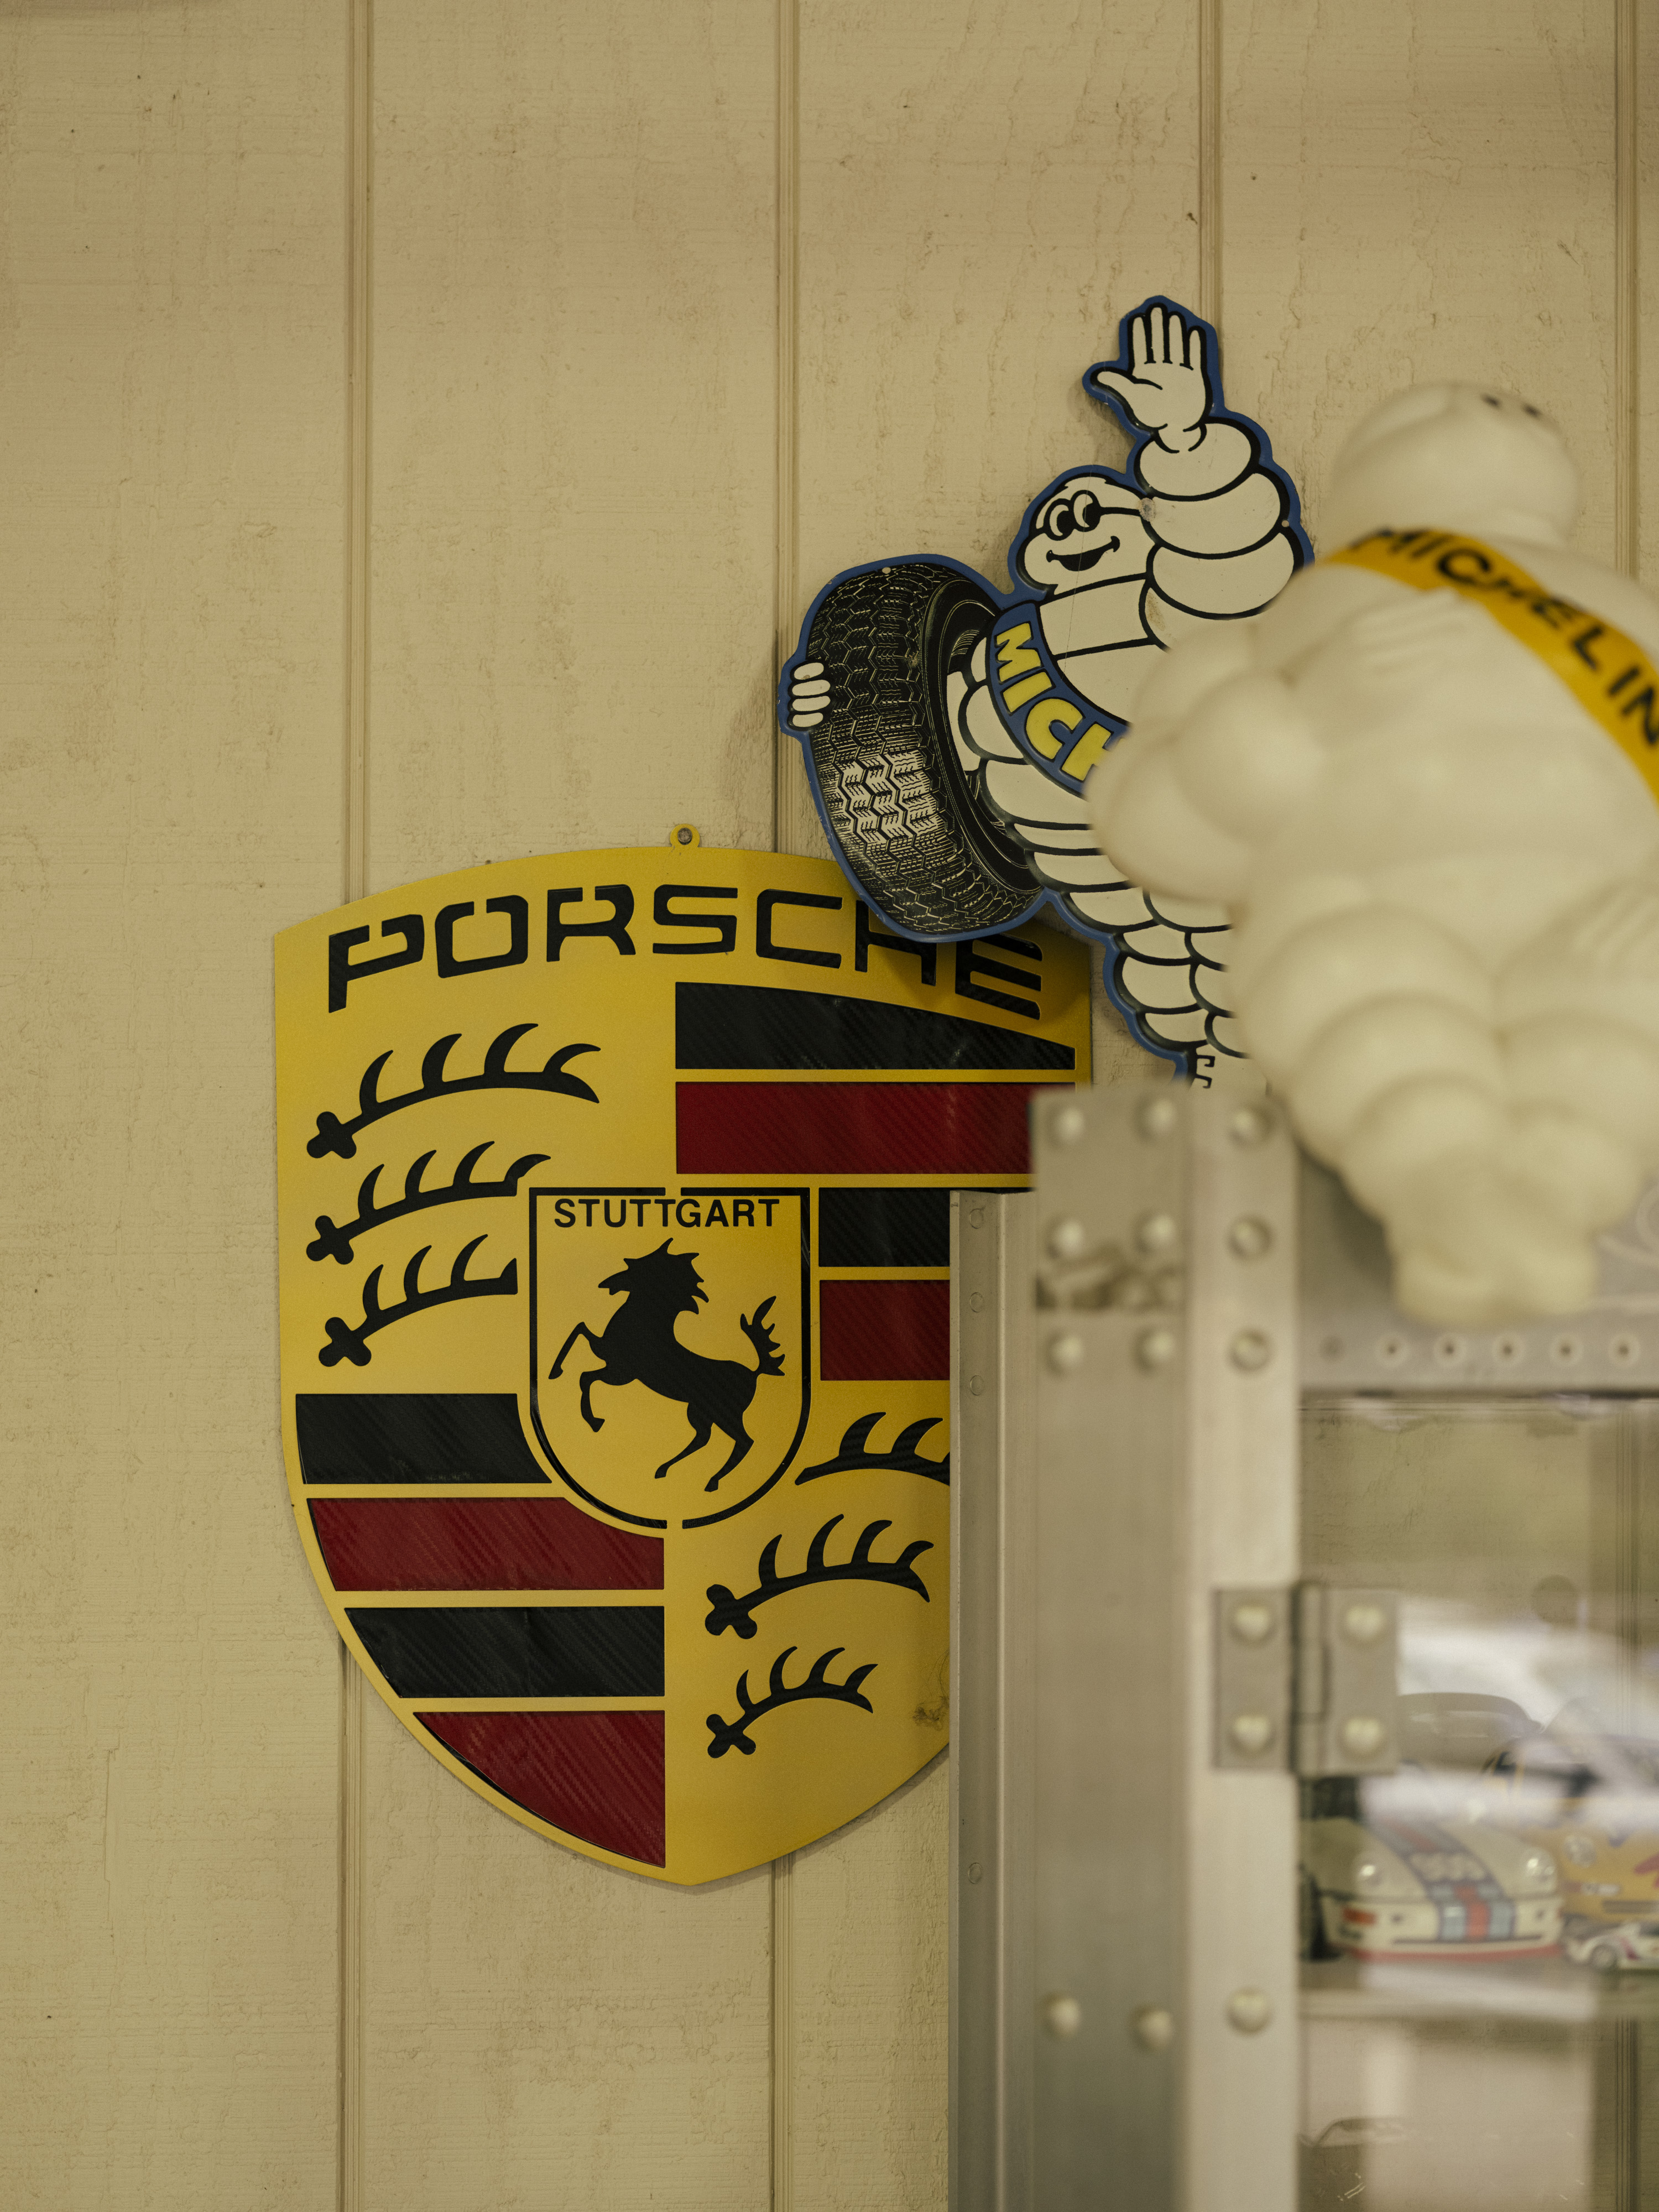 Large Porsche logo on wall, alongside two Michelin men